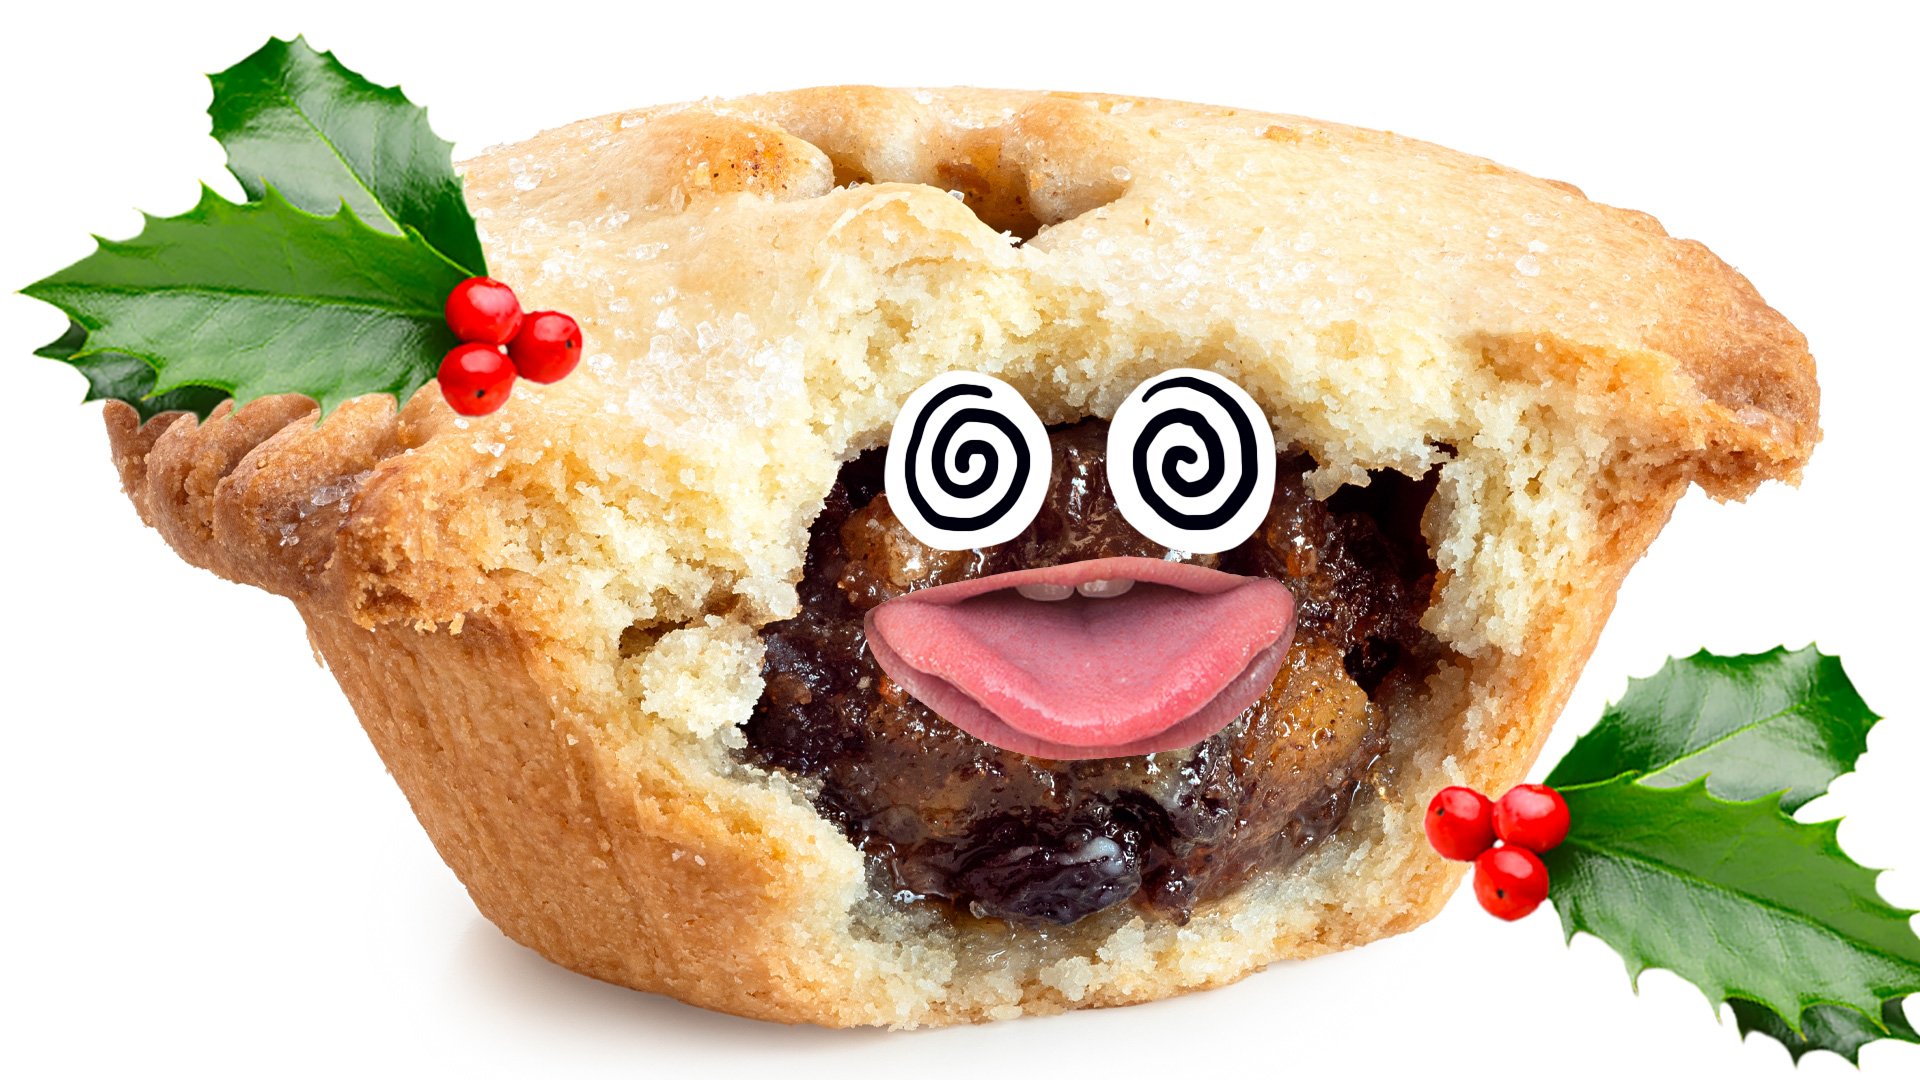 A Christmas mince pie